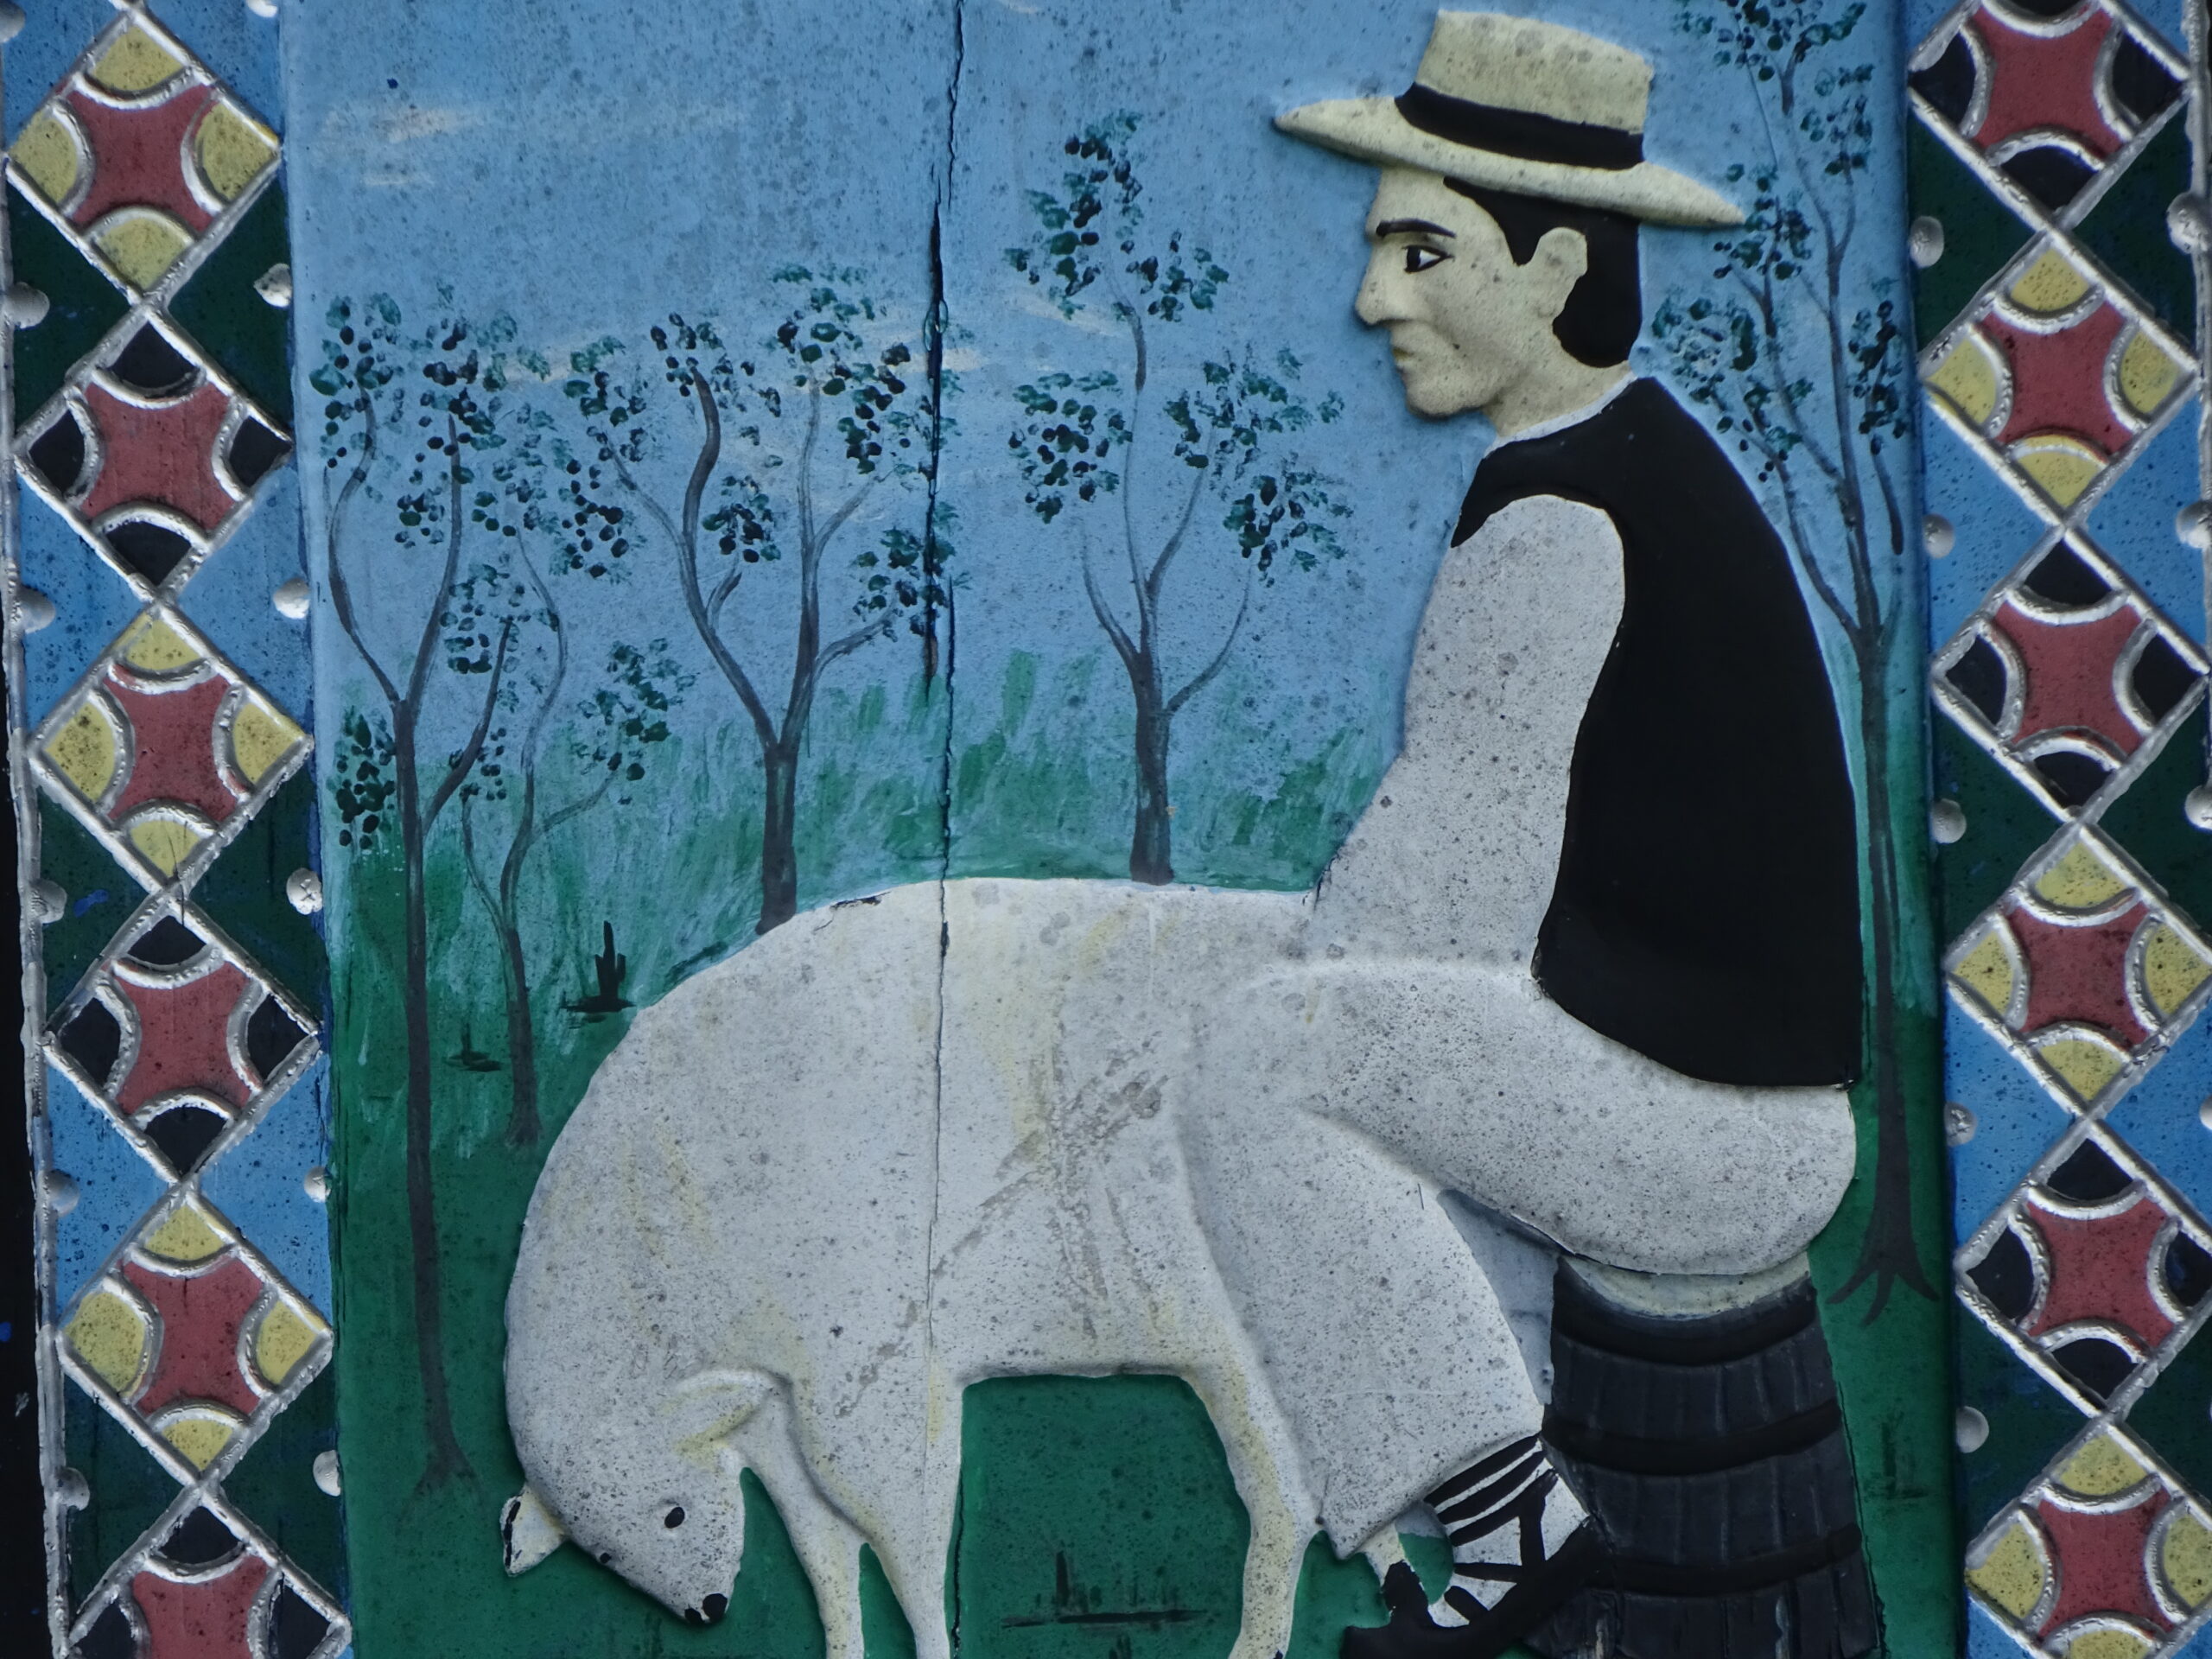 Nezbední čuníci dobývají Rumunsko, kapitola VIII. – Milování s ovečkou způsobuje smrt!